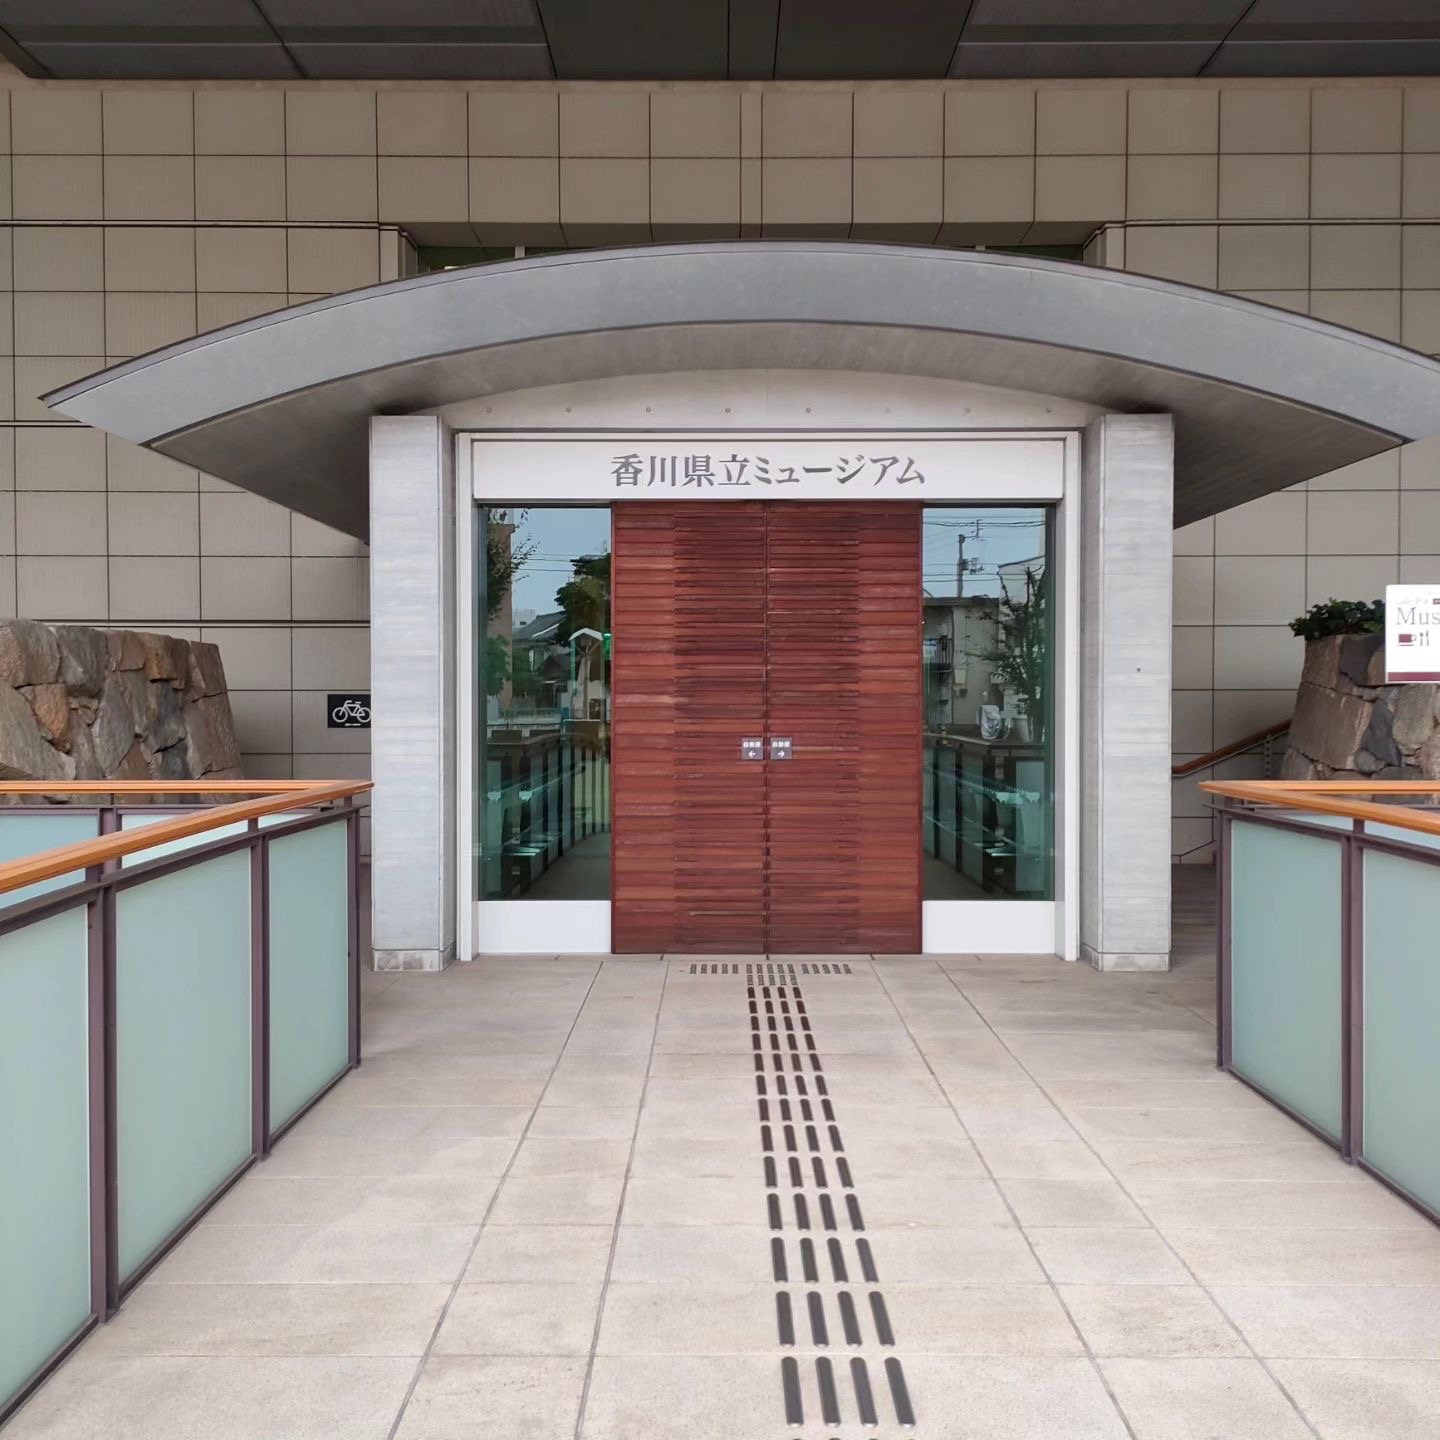 香川县立博物馆：历史、艺术与文化的交汇点探索历史的深度